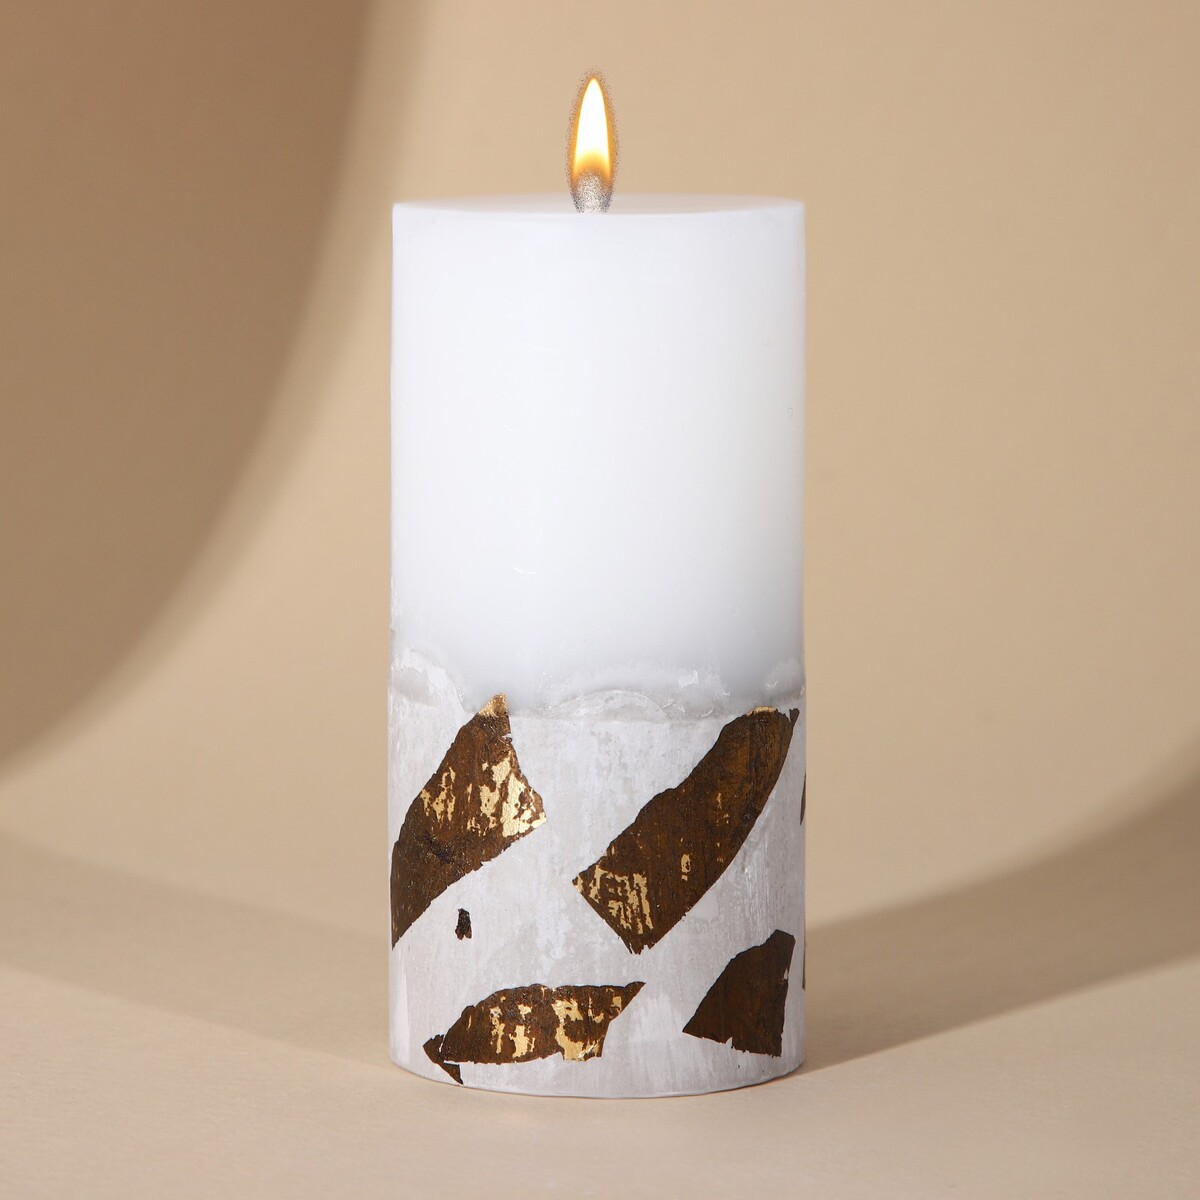 Свеча столбик с бетоном (поталь), цвет белый, 10 х 5 см свеча столбик башкортостан белая 4 5 х 9 см